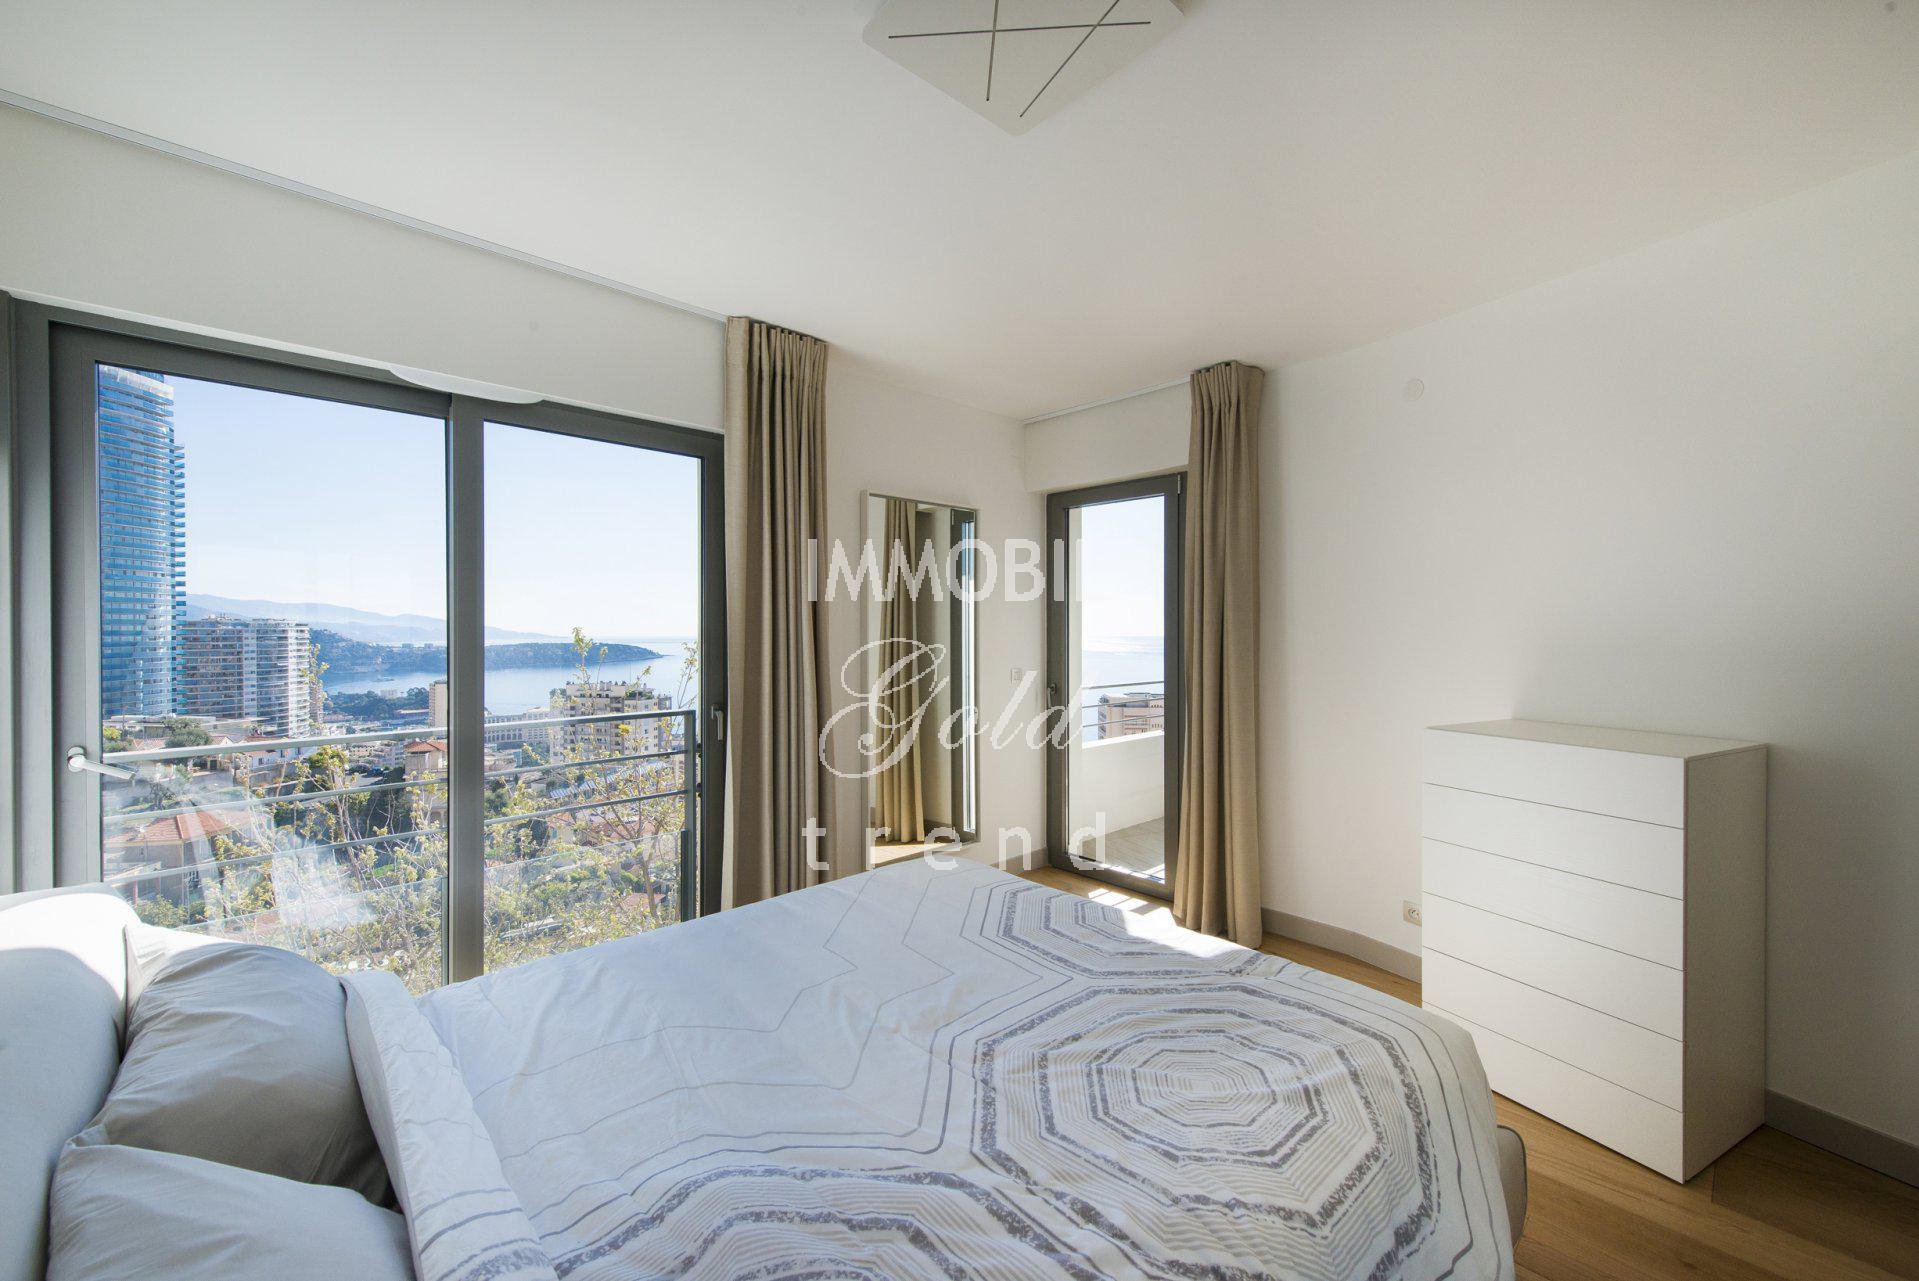 Immobiliare Beausoleil - In affitto, appartamento trilocale vicino a Monaco, con due terrazze, vista mare e parcheggio